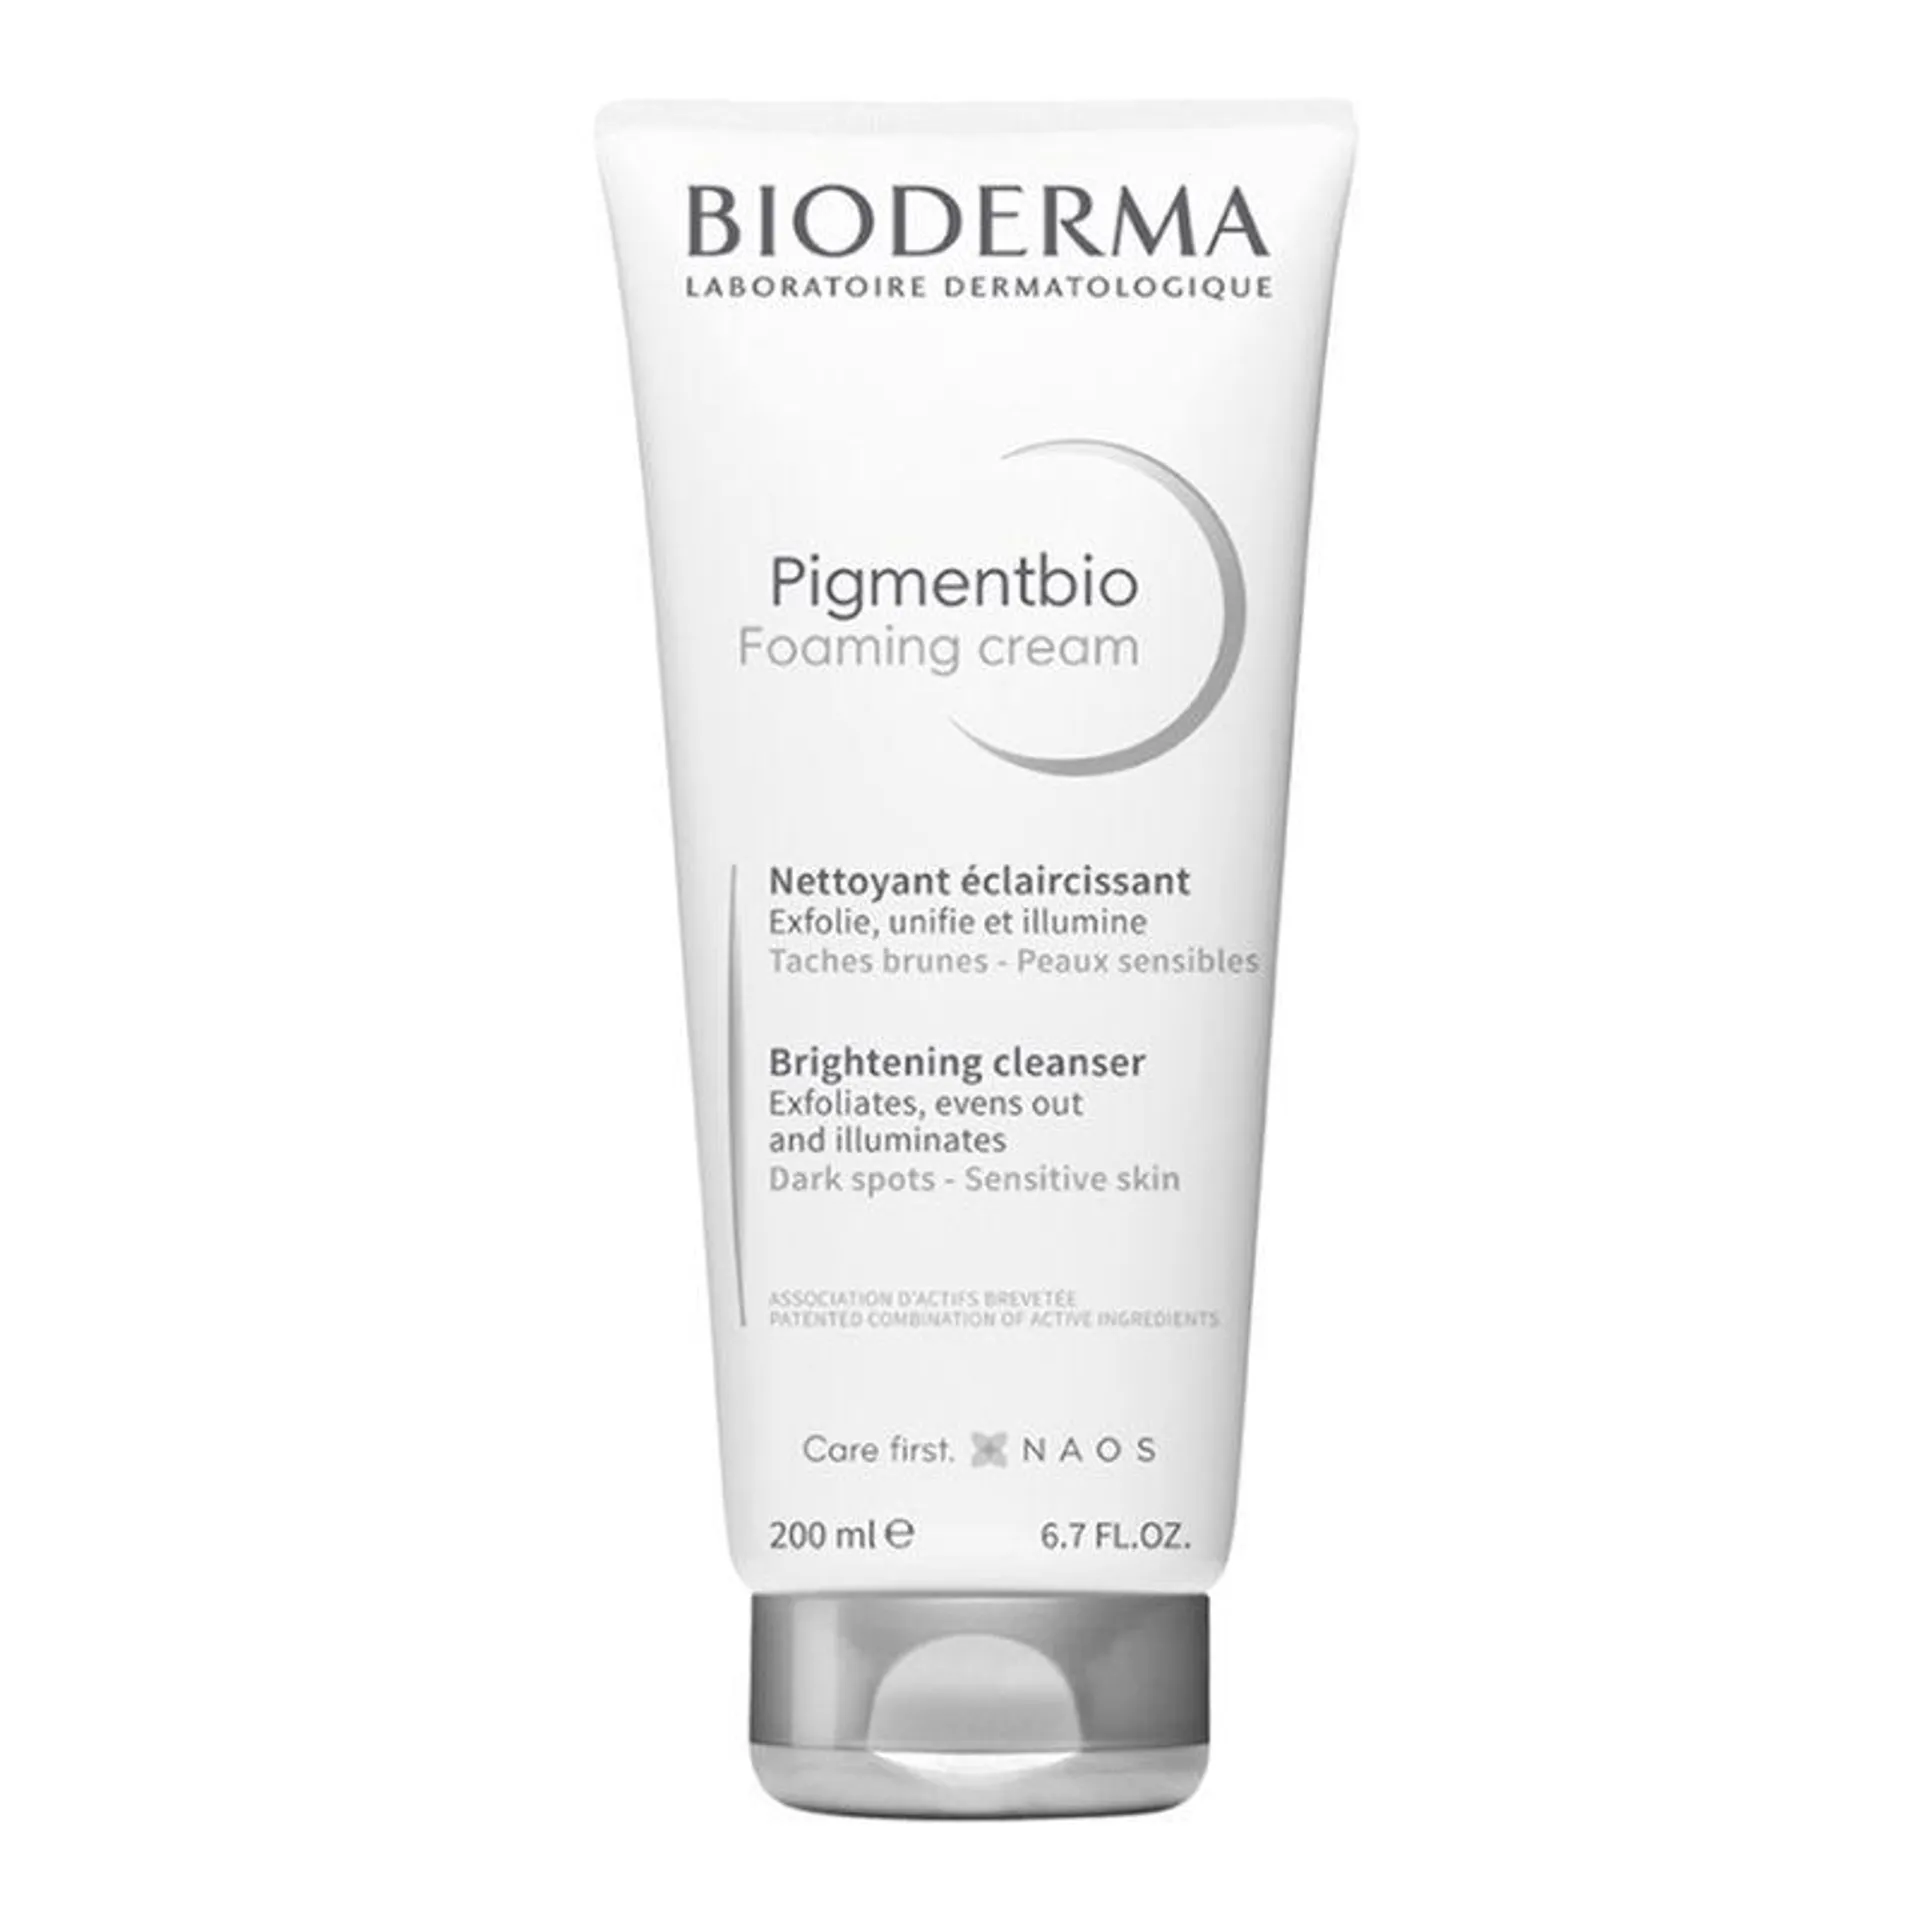 Pigmentbio Foaming Cream - Bioderma